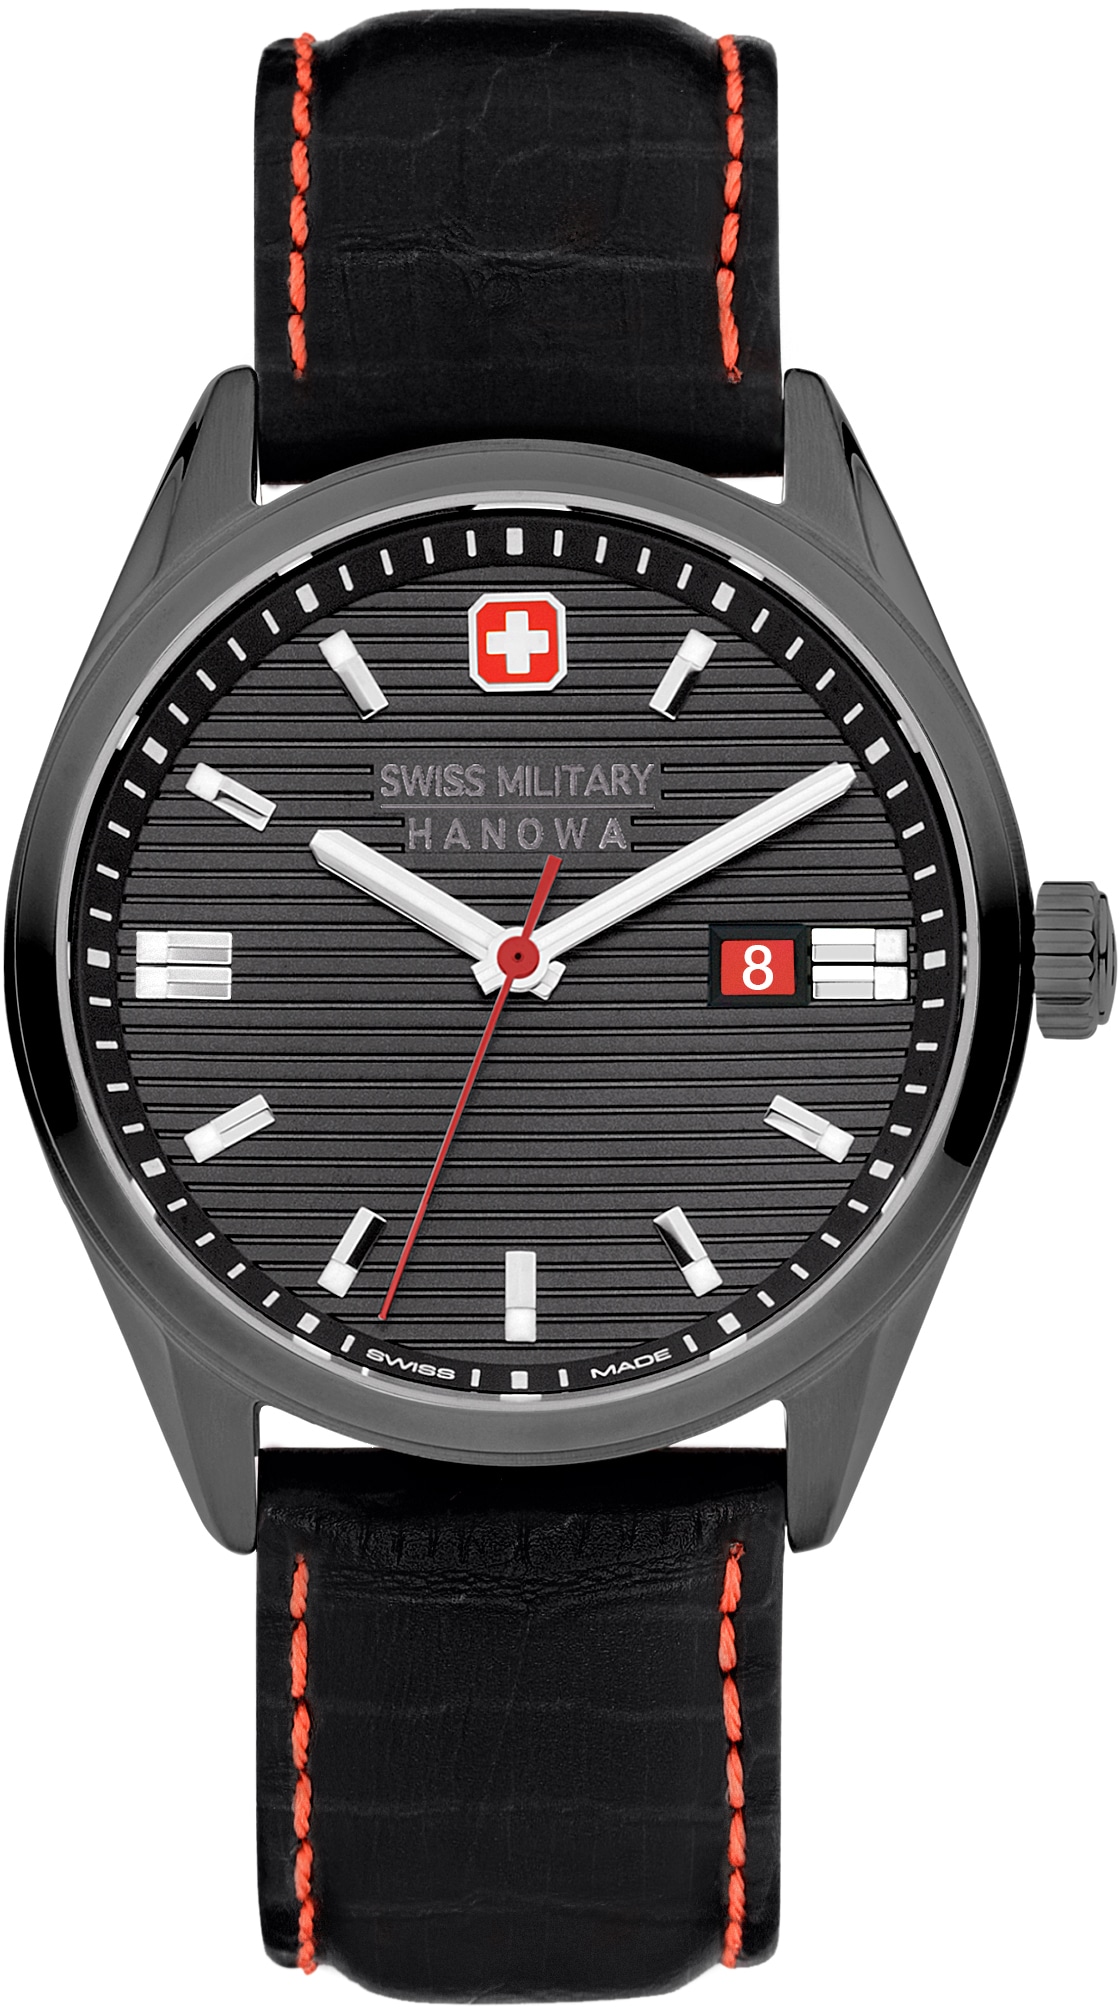 günstige Herren Schweizer Uhren zu Top-Preisen online kaufen | OTTO